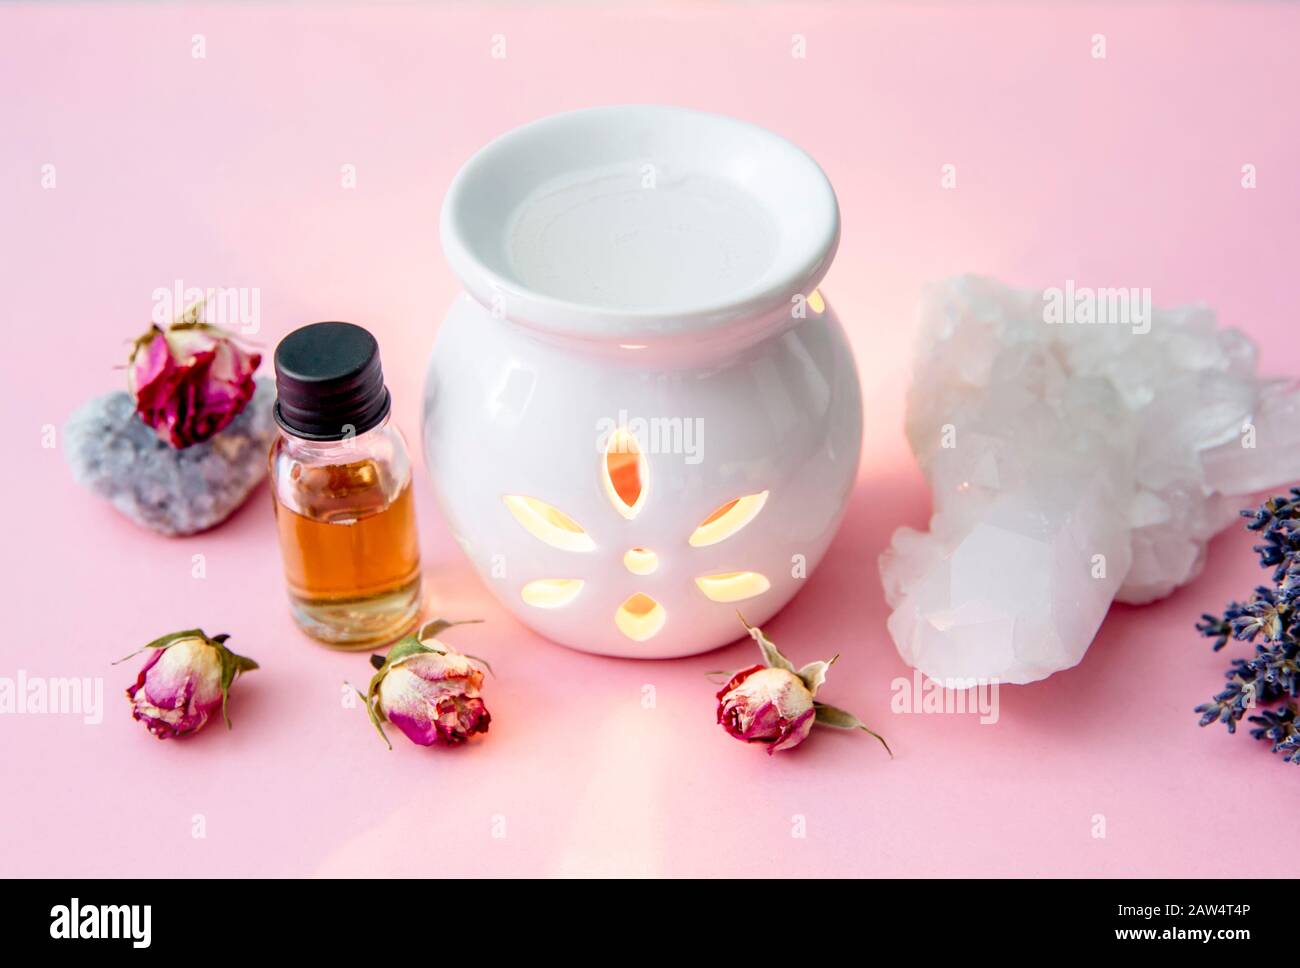 Lámpara de aceite de aroma de vela blanca cerámica con botella de aceite esencial y flores secas, geodes de cristal en un moderno fondo rosa pastel y azul en el interior. Foto de stock